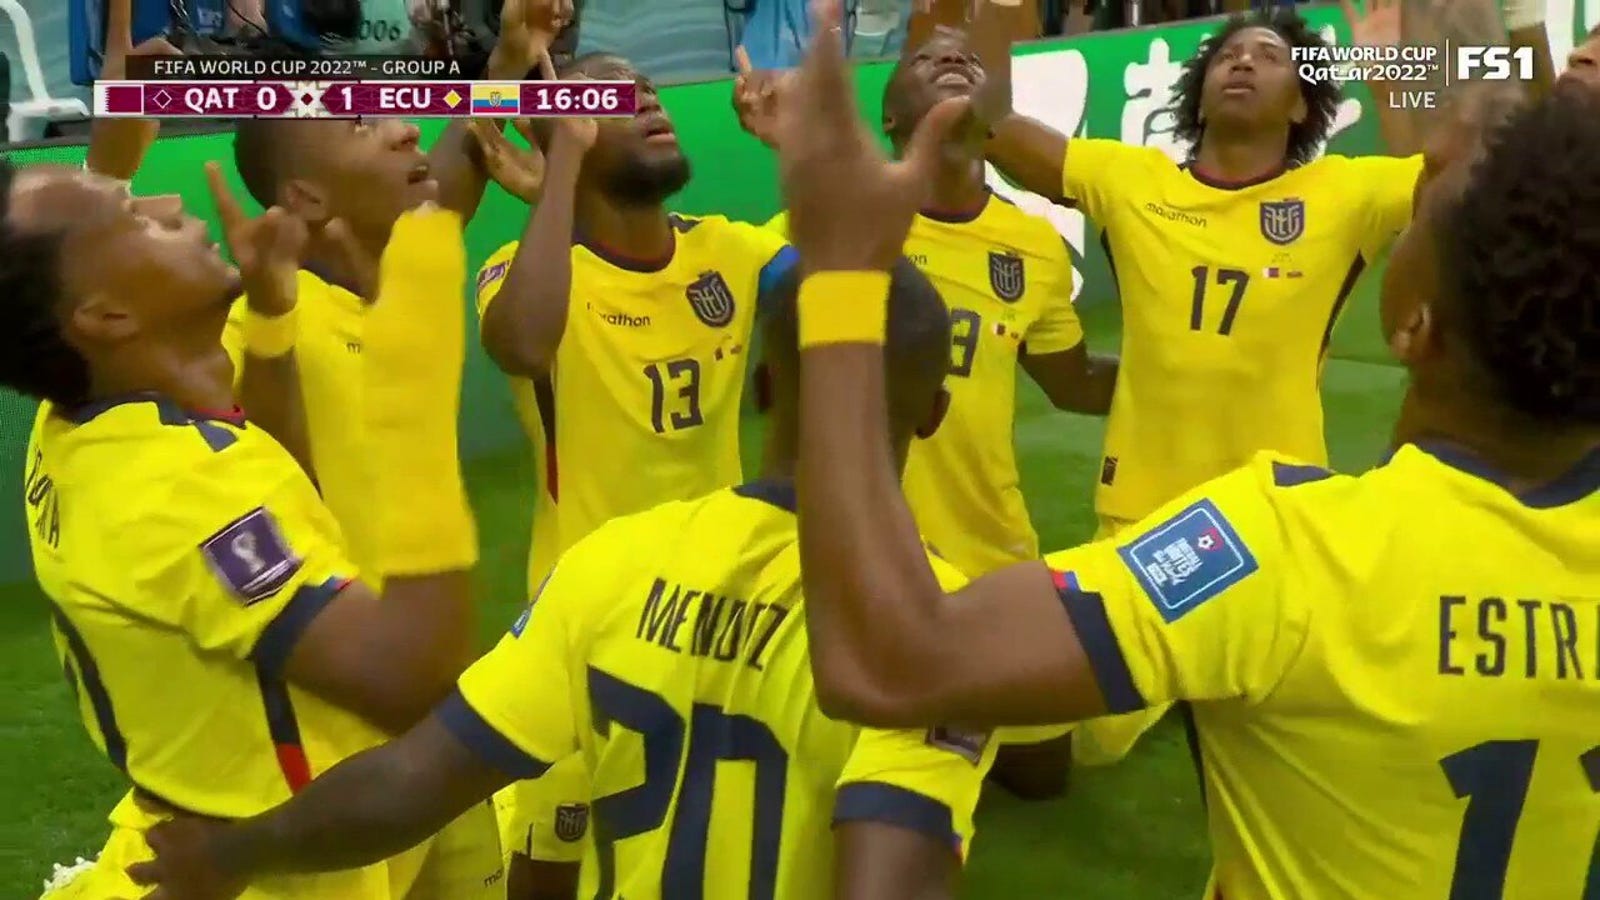 El ecuatoriano Ener Valencia marca un gol contra Qatar en el minuto 15  copa del mundo 2022